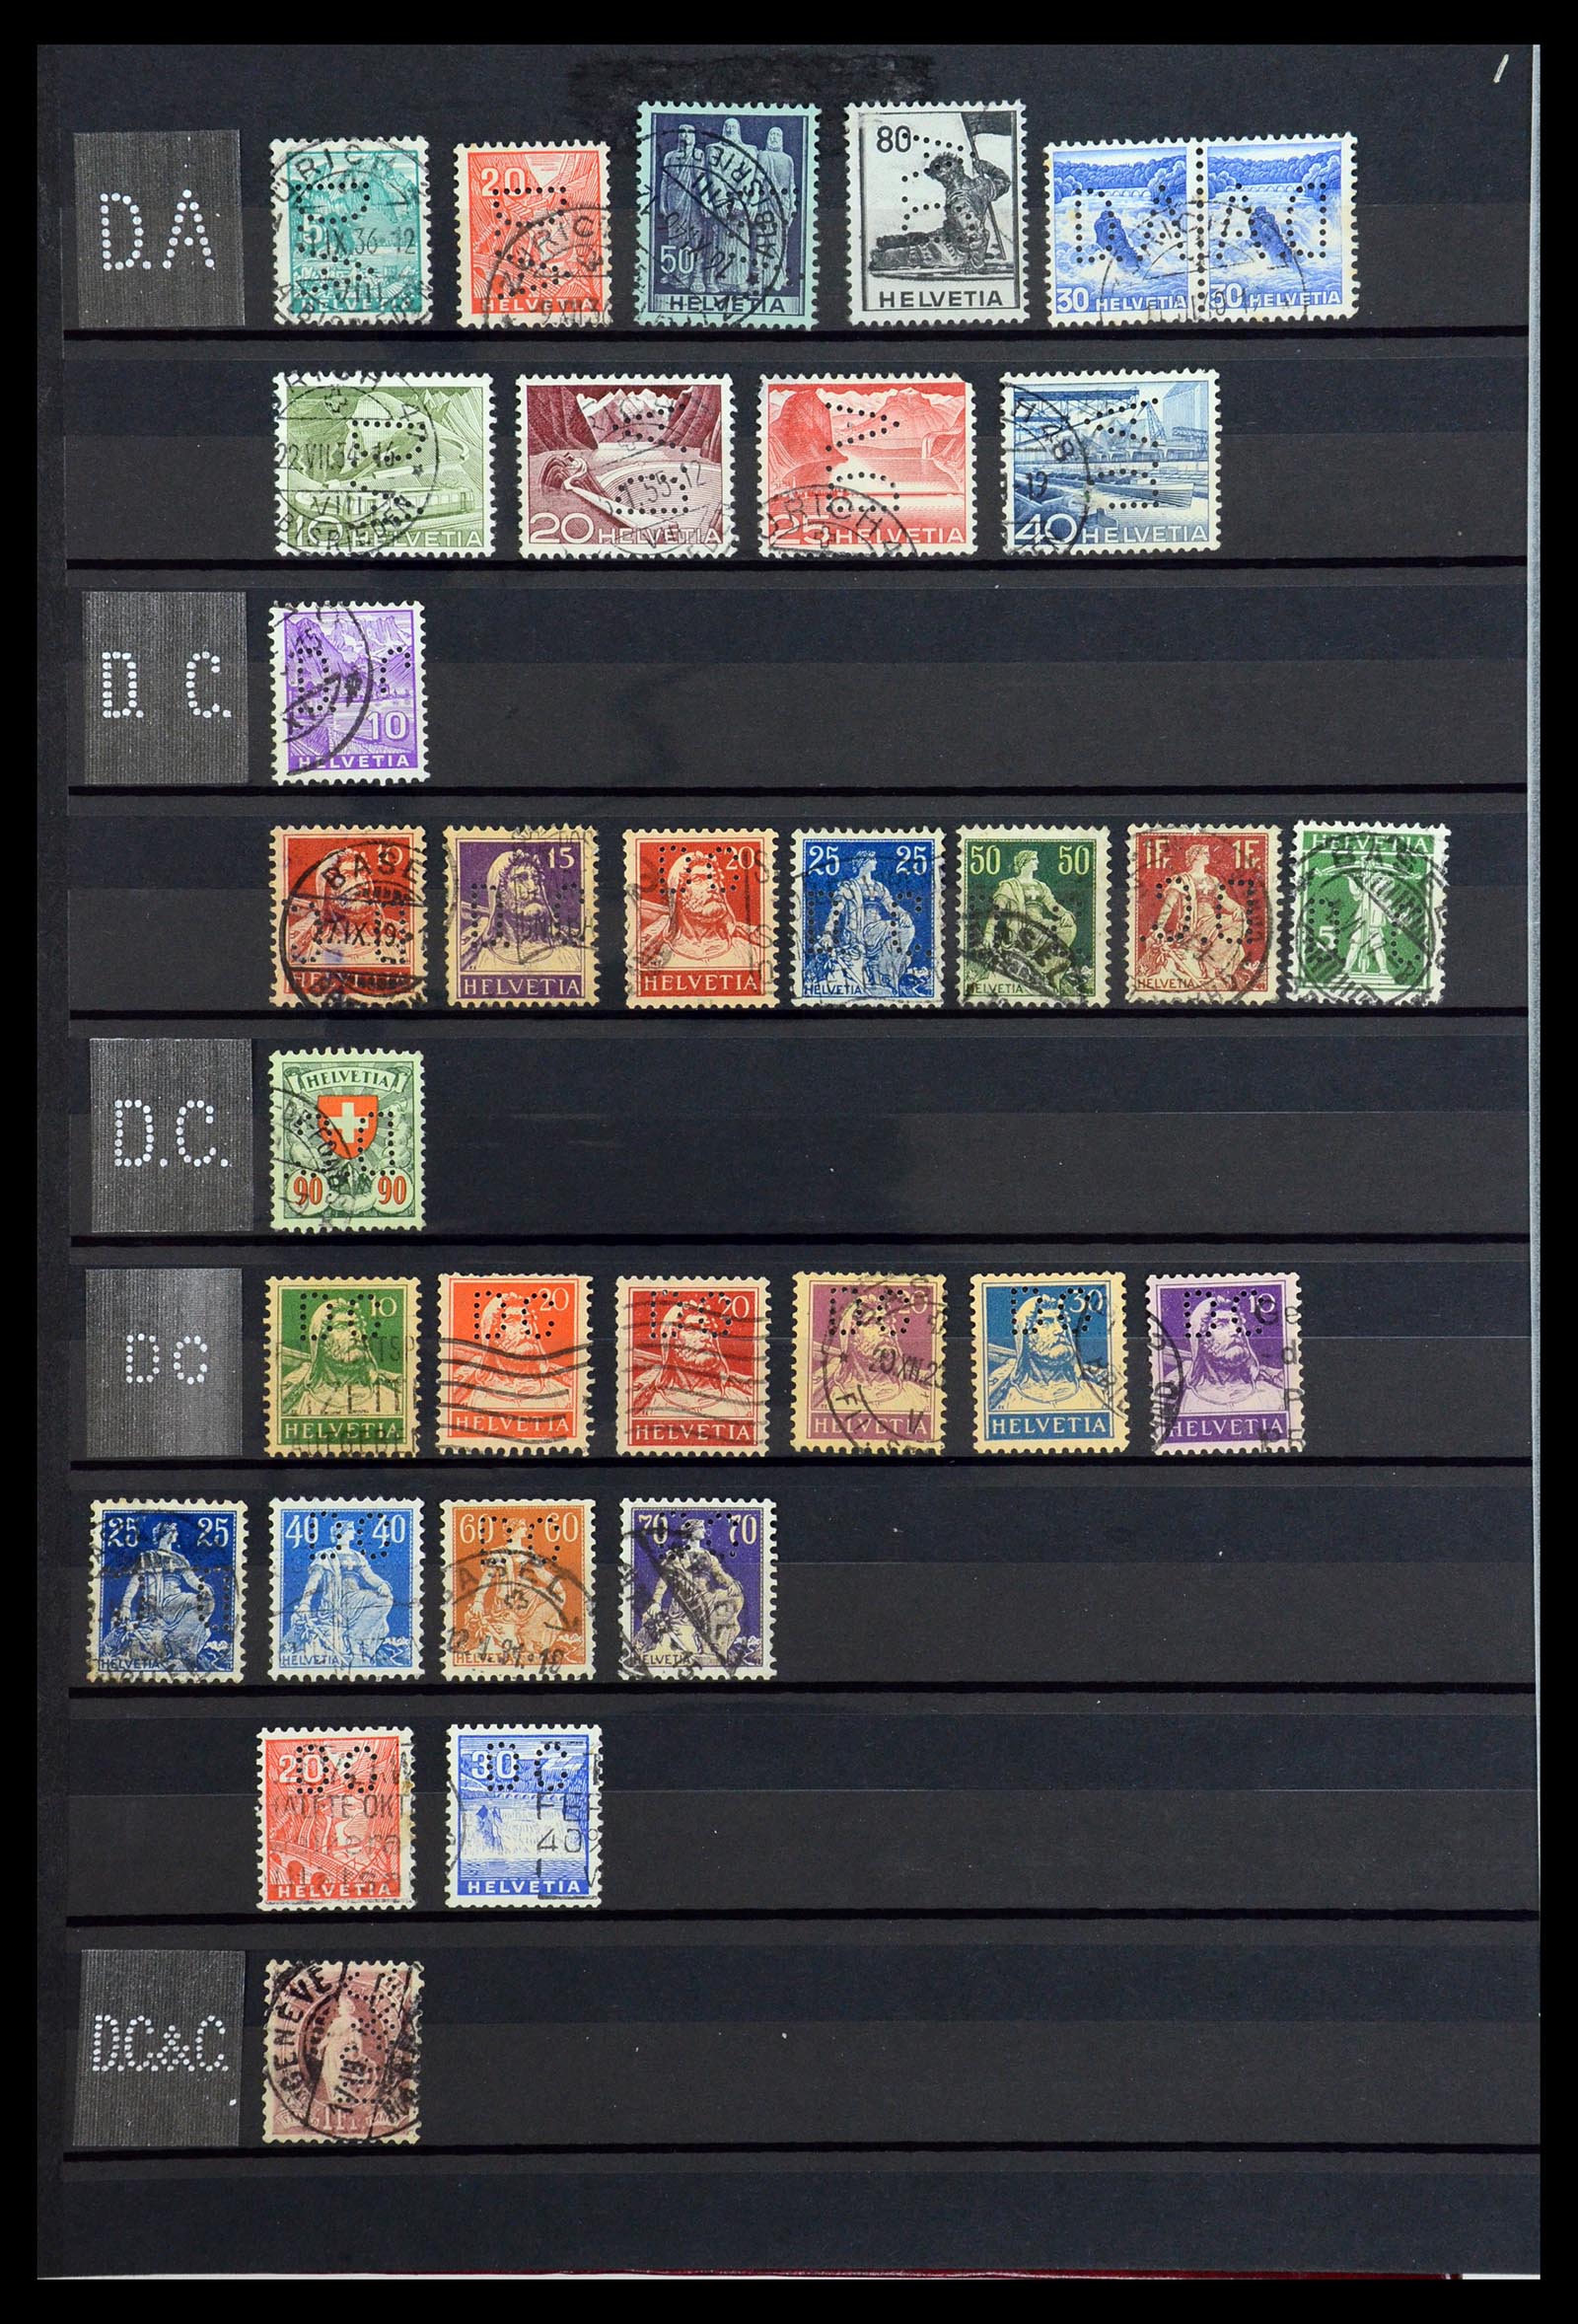 36372 014 - Stamp collection 36372 Switzerland perfins 1880-1960.